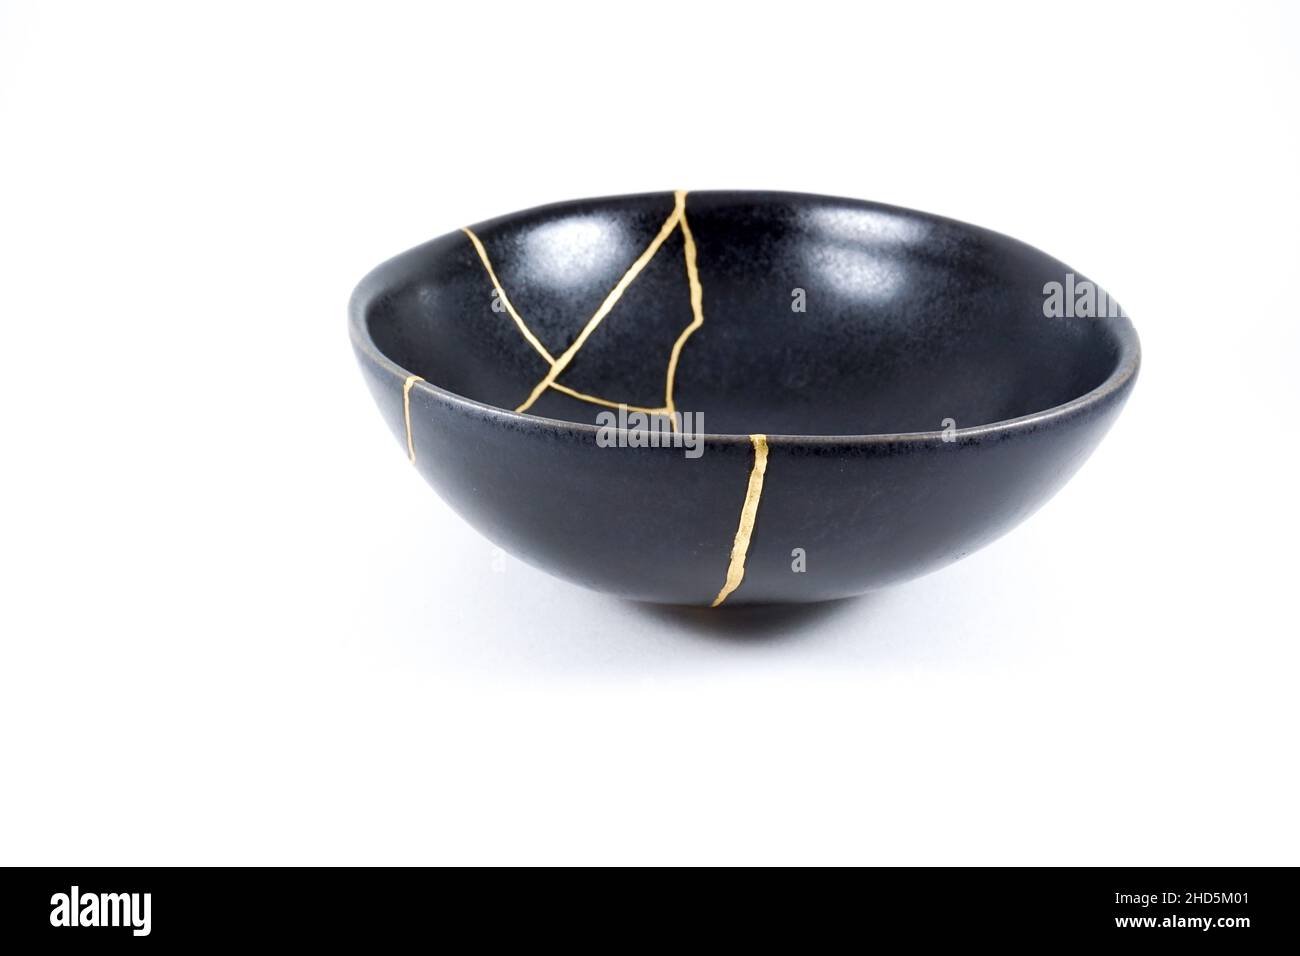 Kintsugi restauration des fissures d'or, bol noir japonais fixé avec la technique de restauration antique kintsukuri, la beauté des imperfections, représentent Banque D'Images